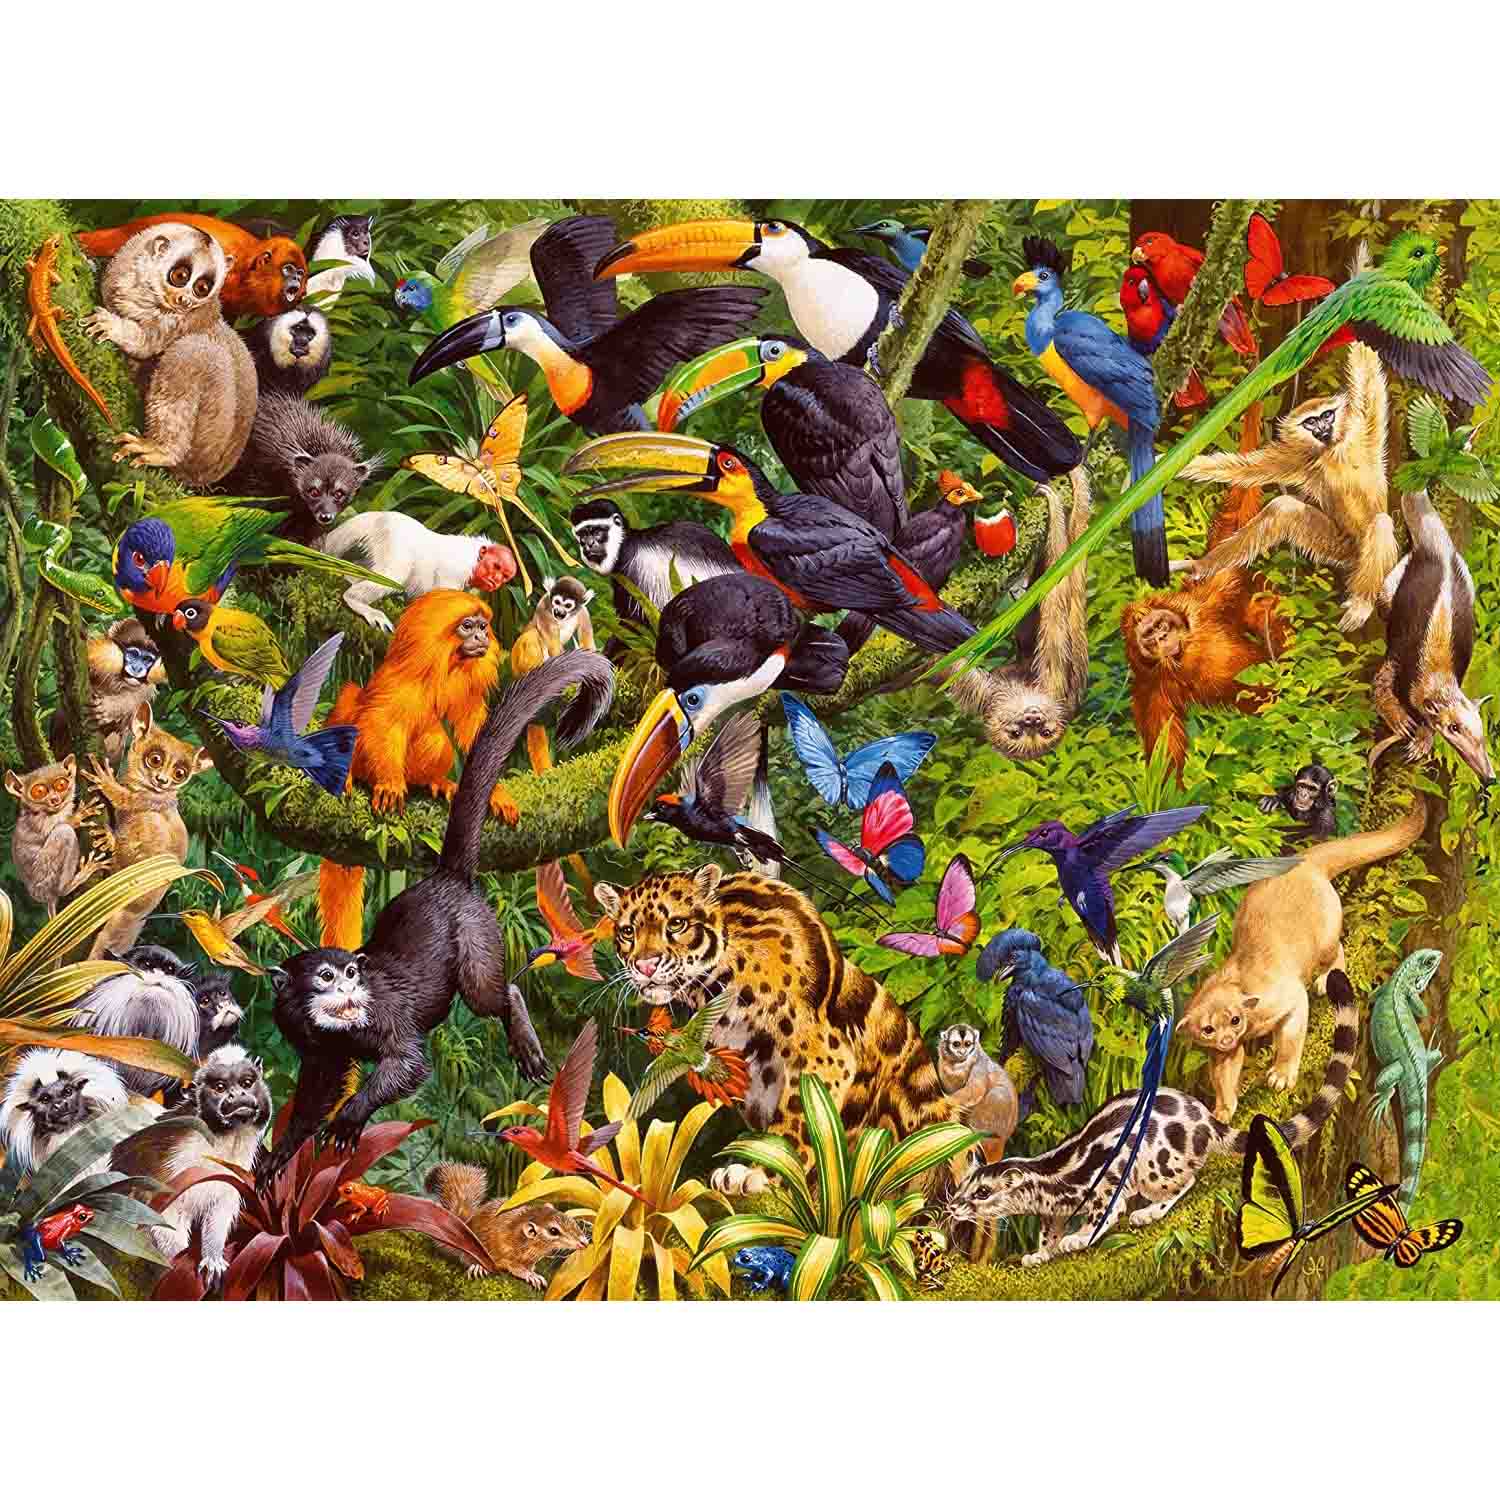 Puzzle 200 piese - XXL - Tropical Rainforest | Ravensburger